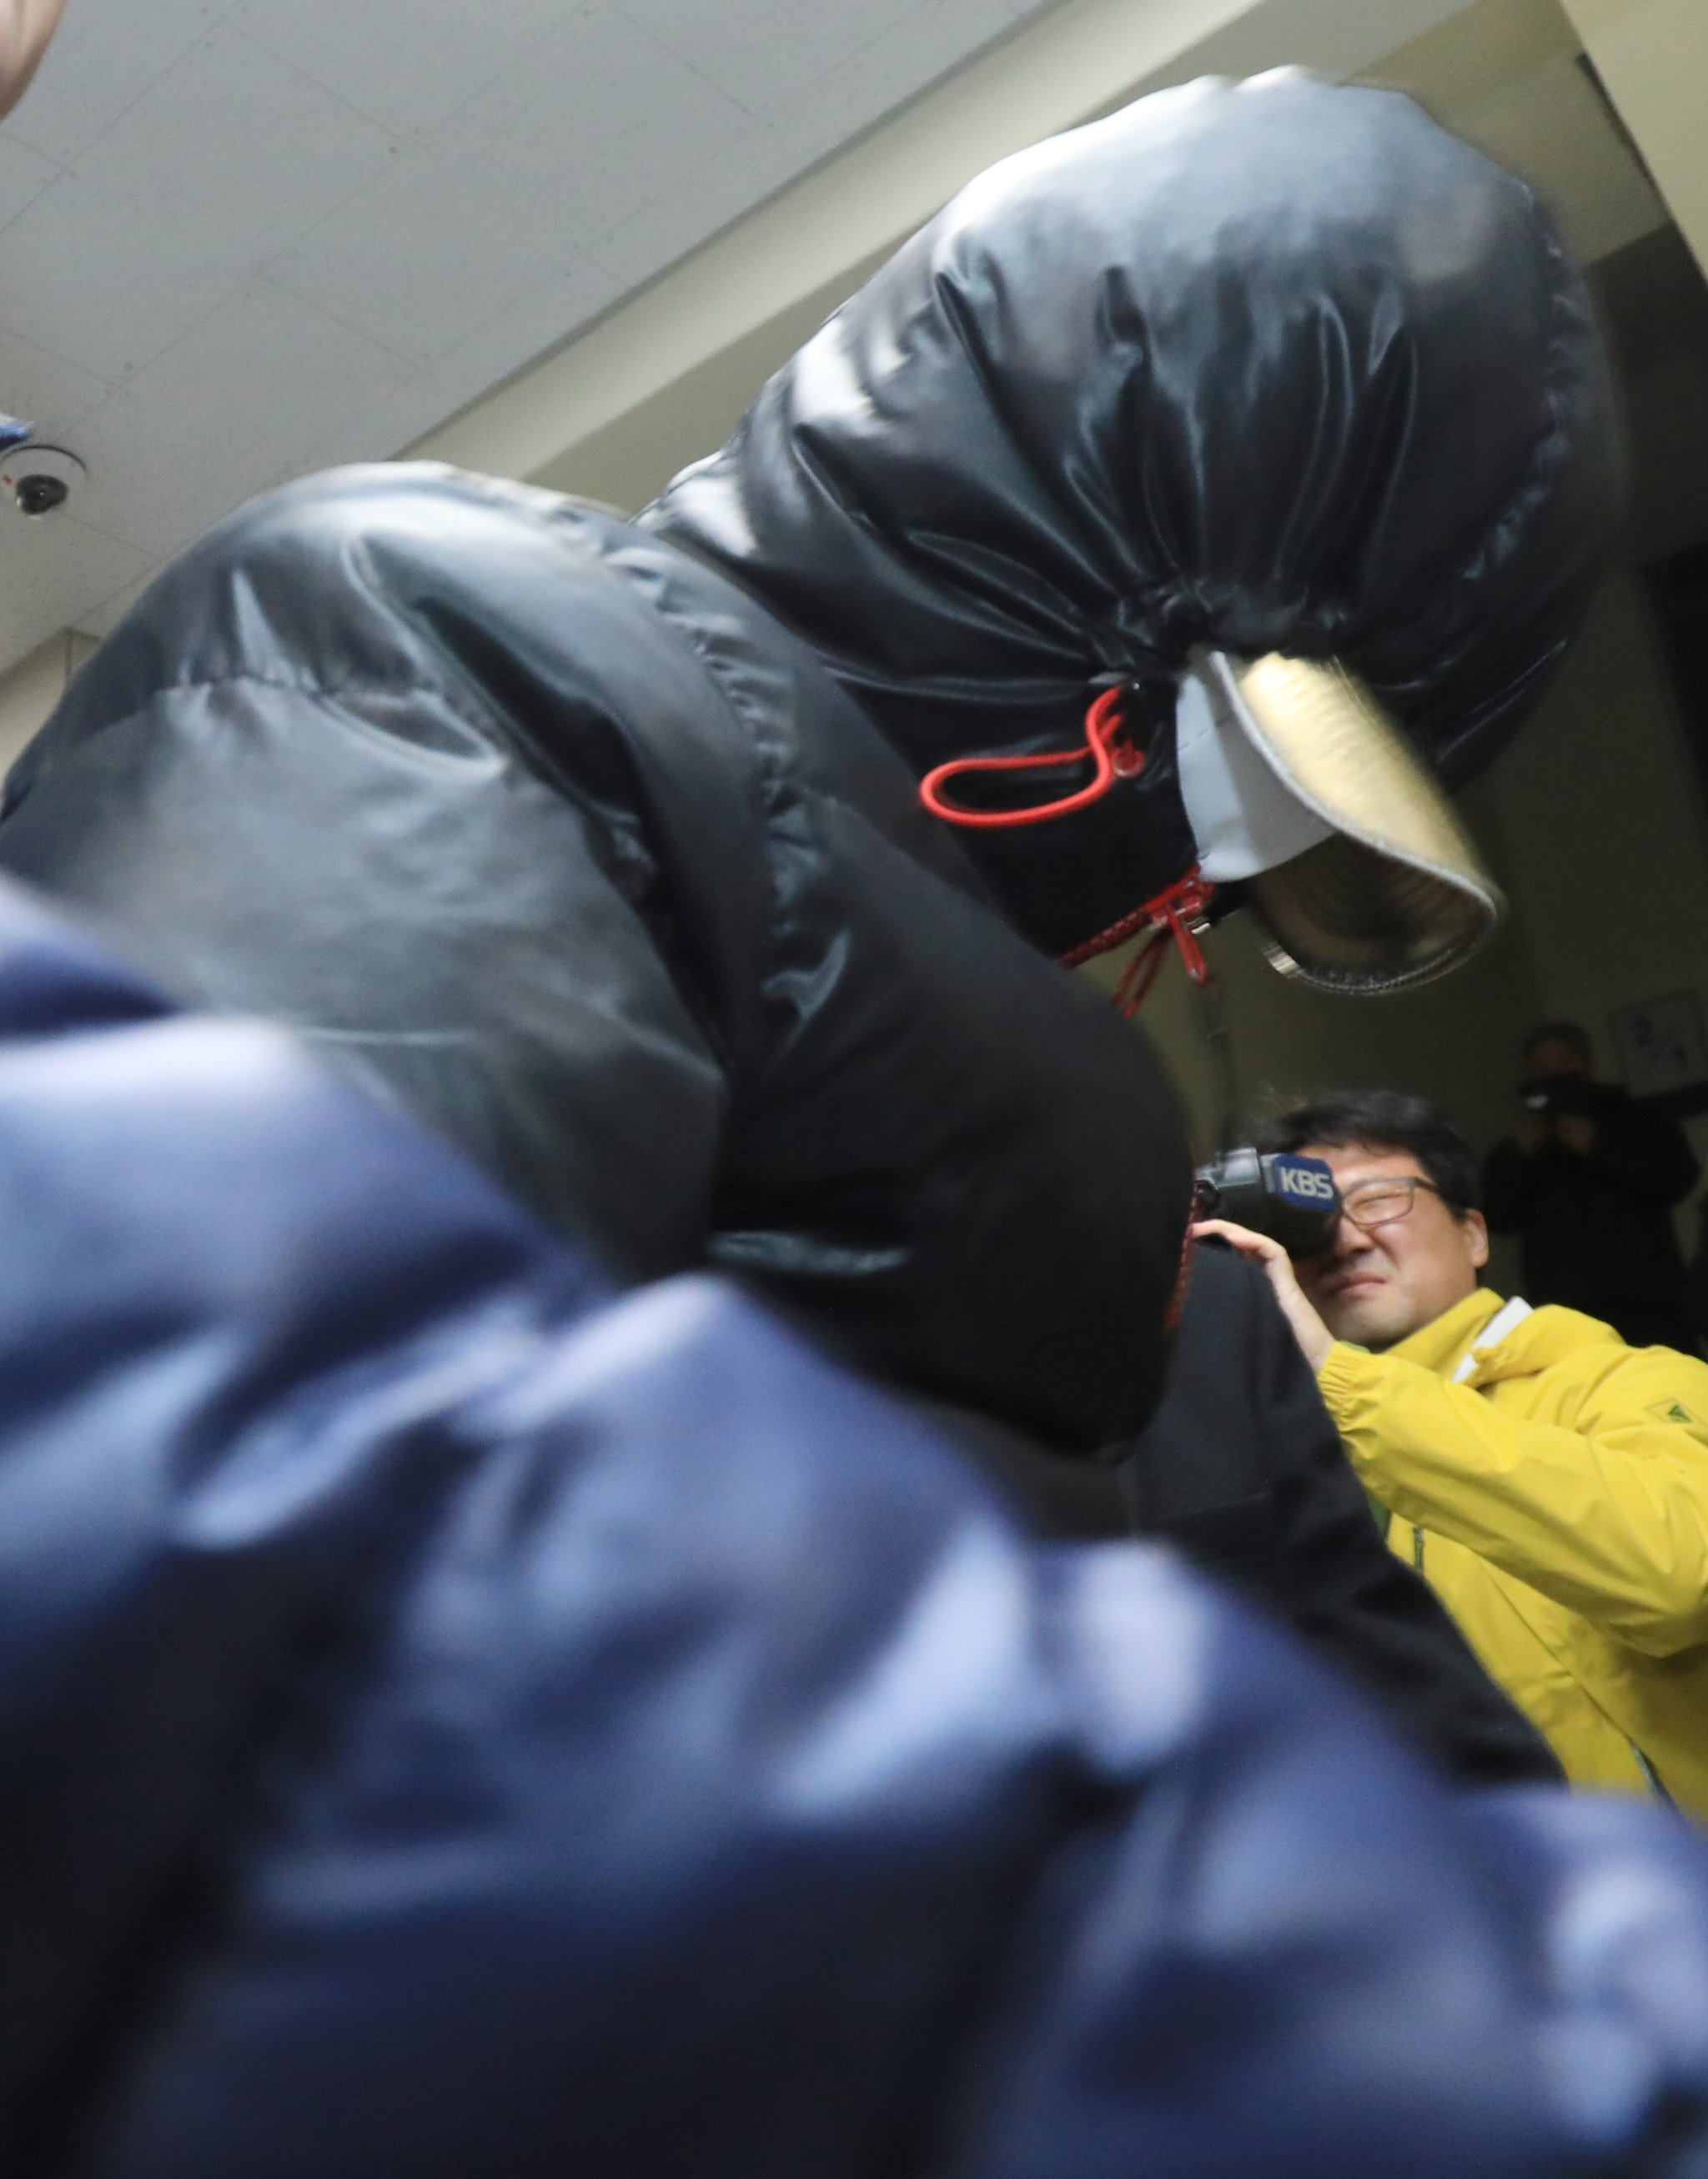 30일 오후 7시쯤 전북 전주시 완산경찰서에 '얼굴 없는 천사'의 성금을 훔쳐 달아난 혐의(특수절도)로 긴급체포된 30대 용의자가 청사에 들어서고 있다. [뉴스1]